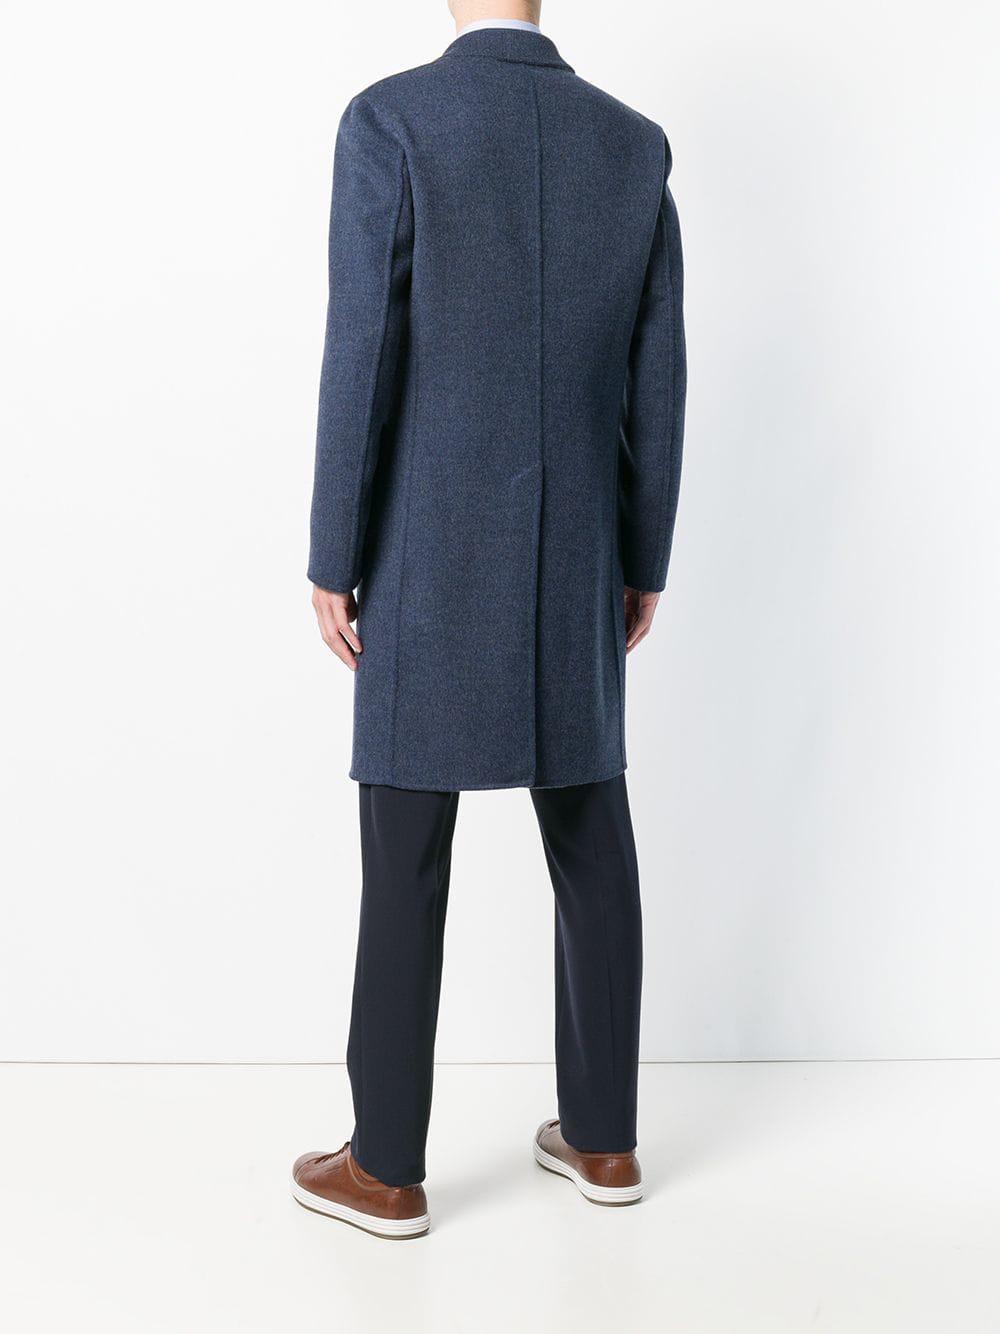 Lardini Wool Double Breasted Coat in Blue for Men - Lyst